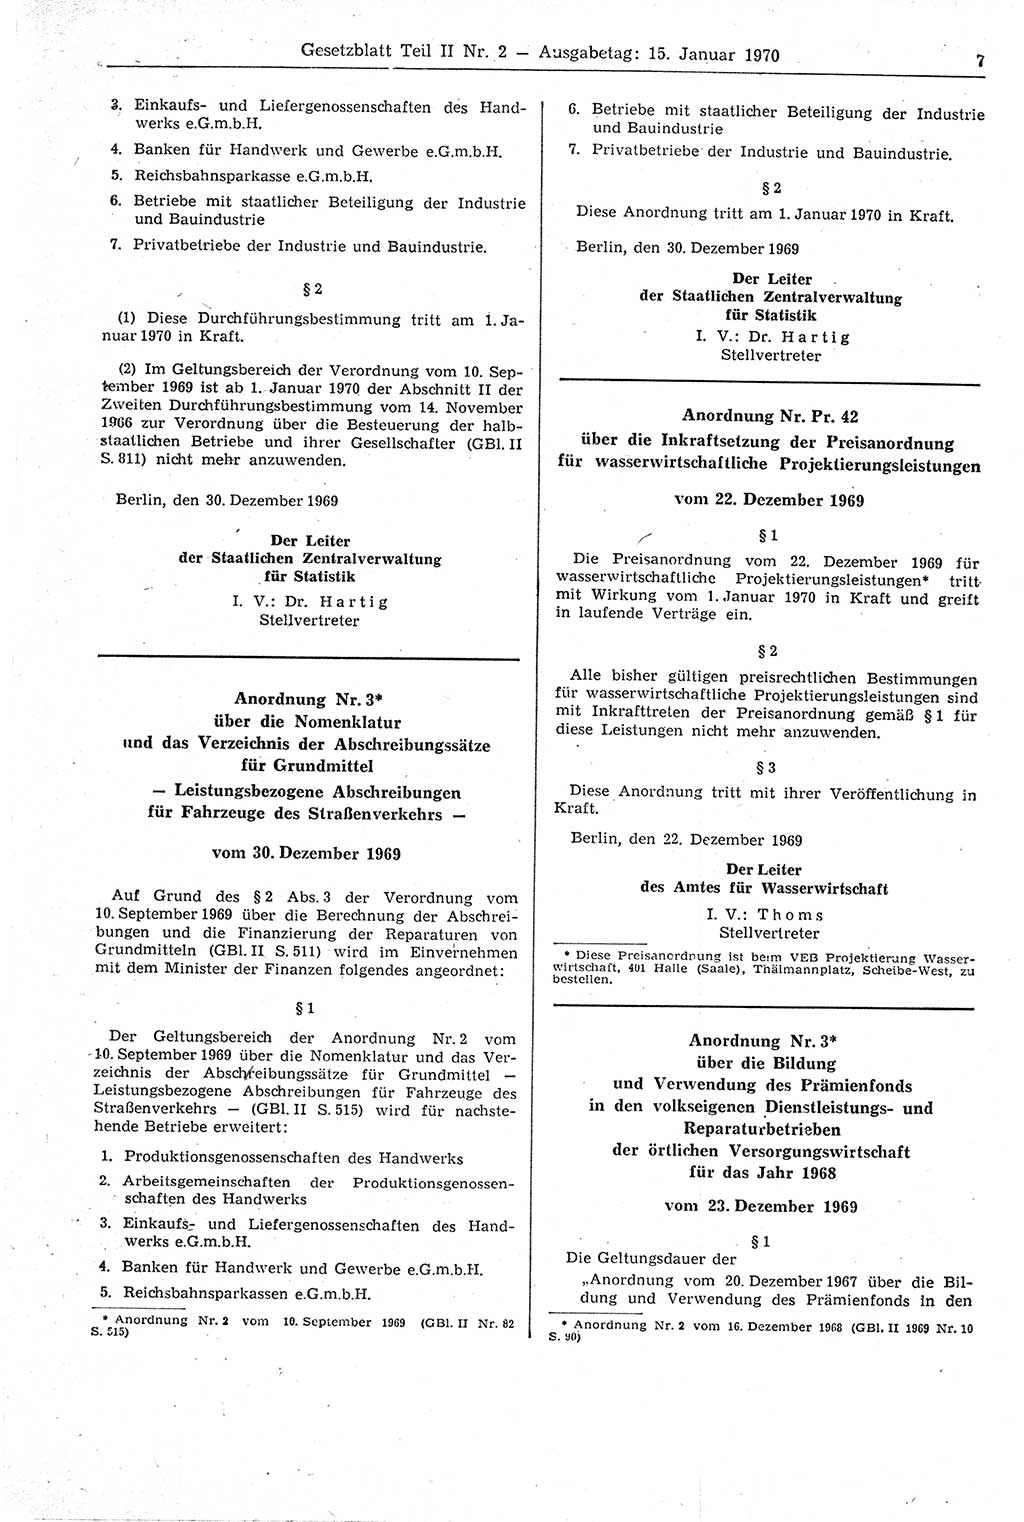 Gesetzblatt (GBl.) der Deutschen Demokratischen Republik (DDR) Teil ⅠⅠ 1970, Seite 7 (GBl. DDR ⅠⅠ 1970, S. 7)